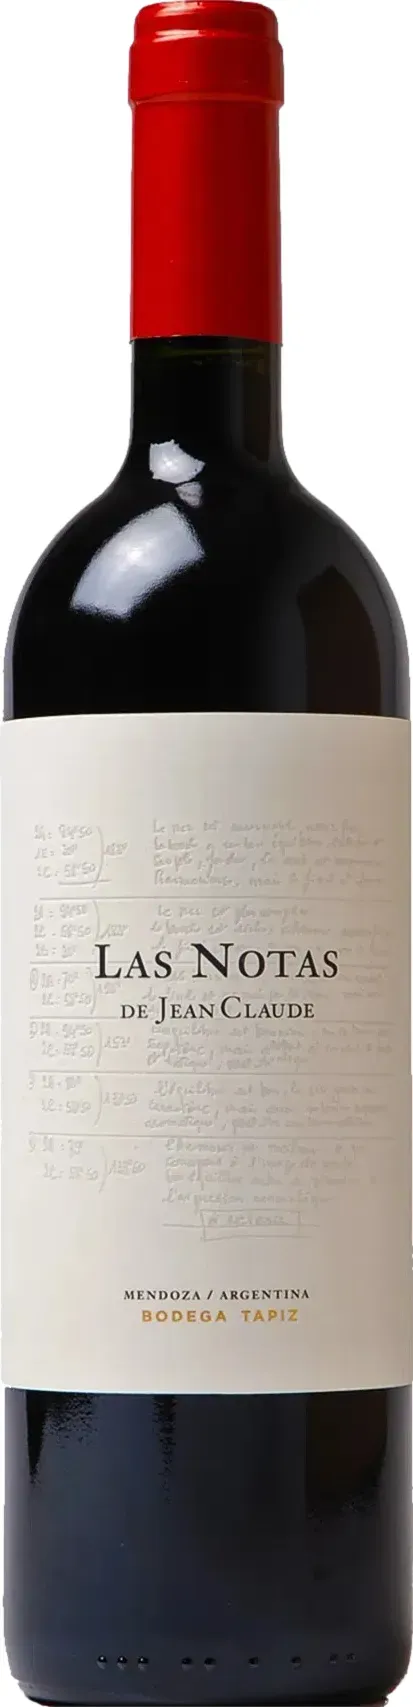 Tapiz Las Notas de Jean Claude 2019 - 15.30 % vol